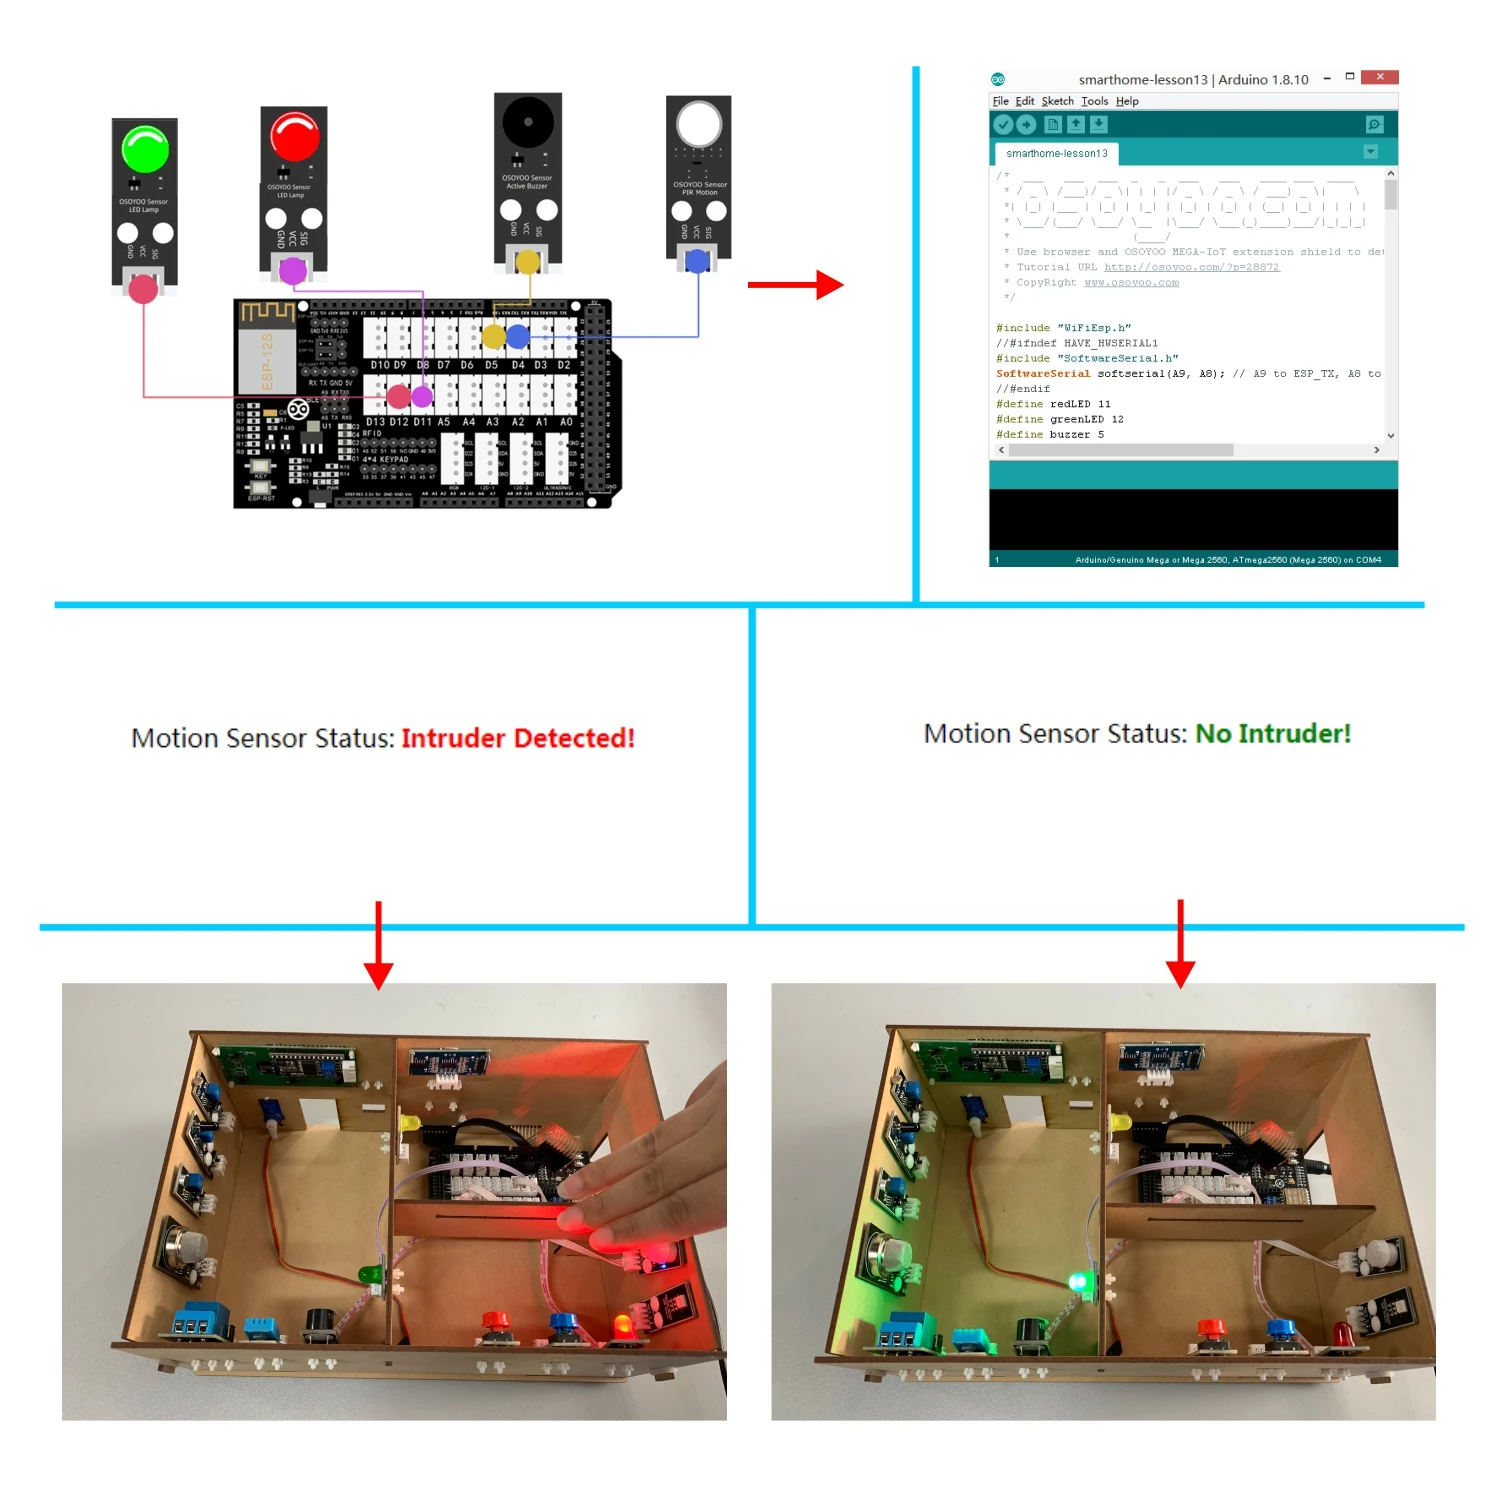 OSOYOO Юн IoT комплект домашней безопасности системы Android/iOS wifi Пульт дистанционного управления умный дом деревянная модель, DIY Iot проекты с